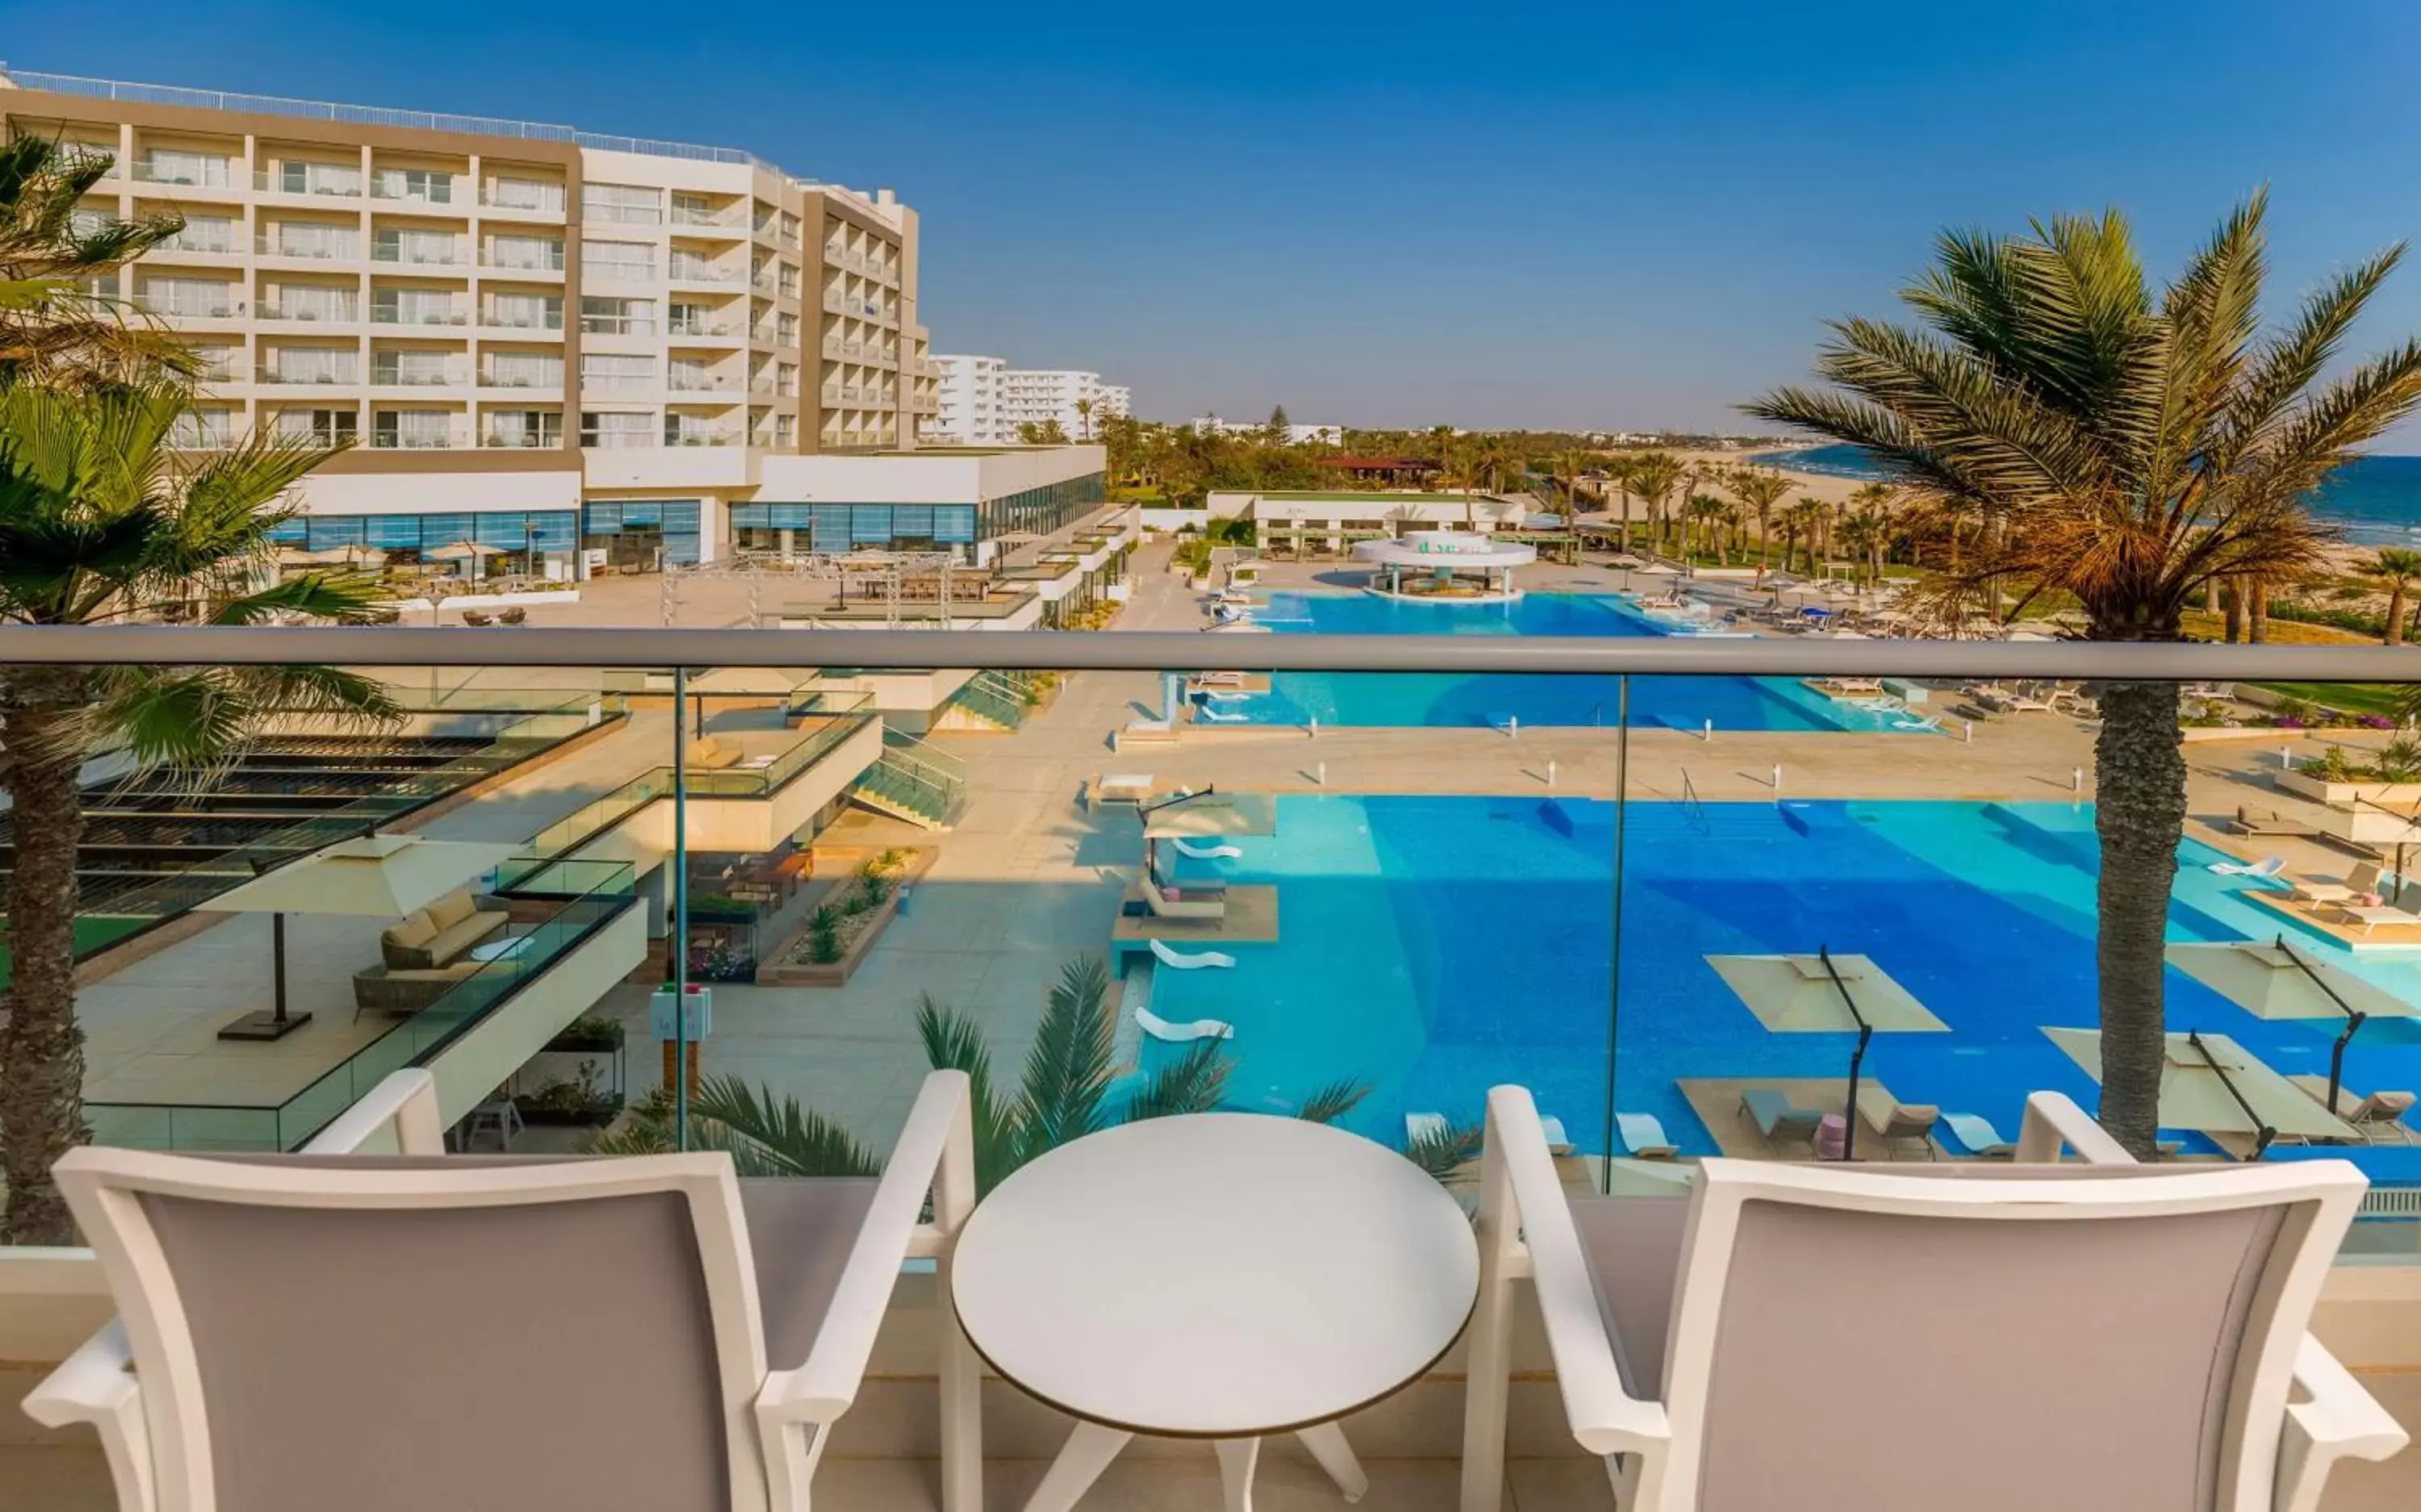 View (from property/room), Pool View in Hilton Skanes Monastir Beach Resort